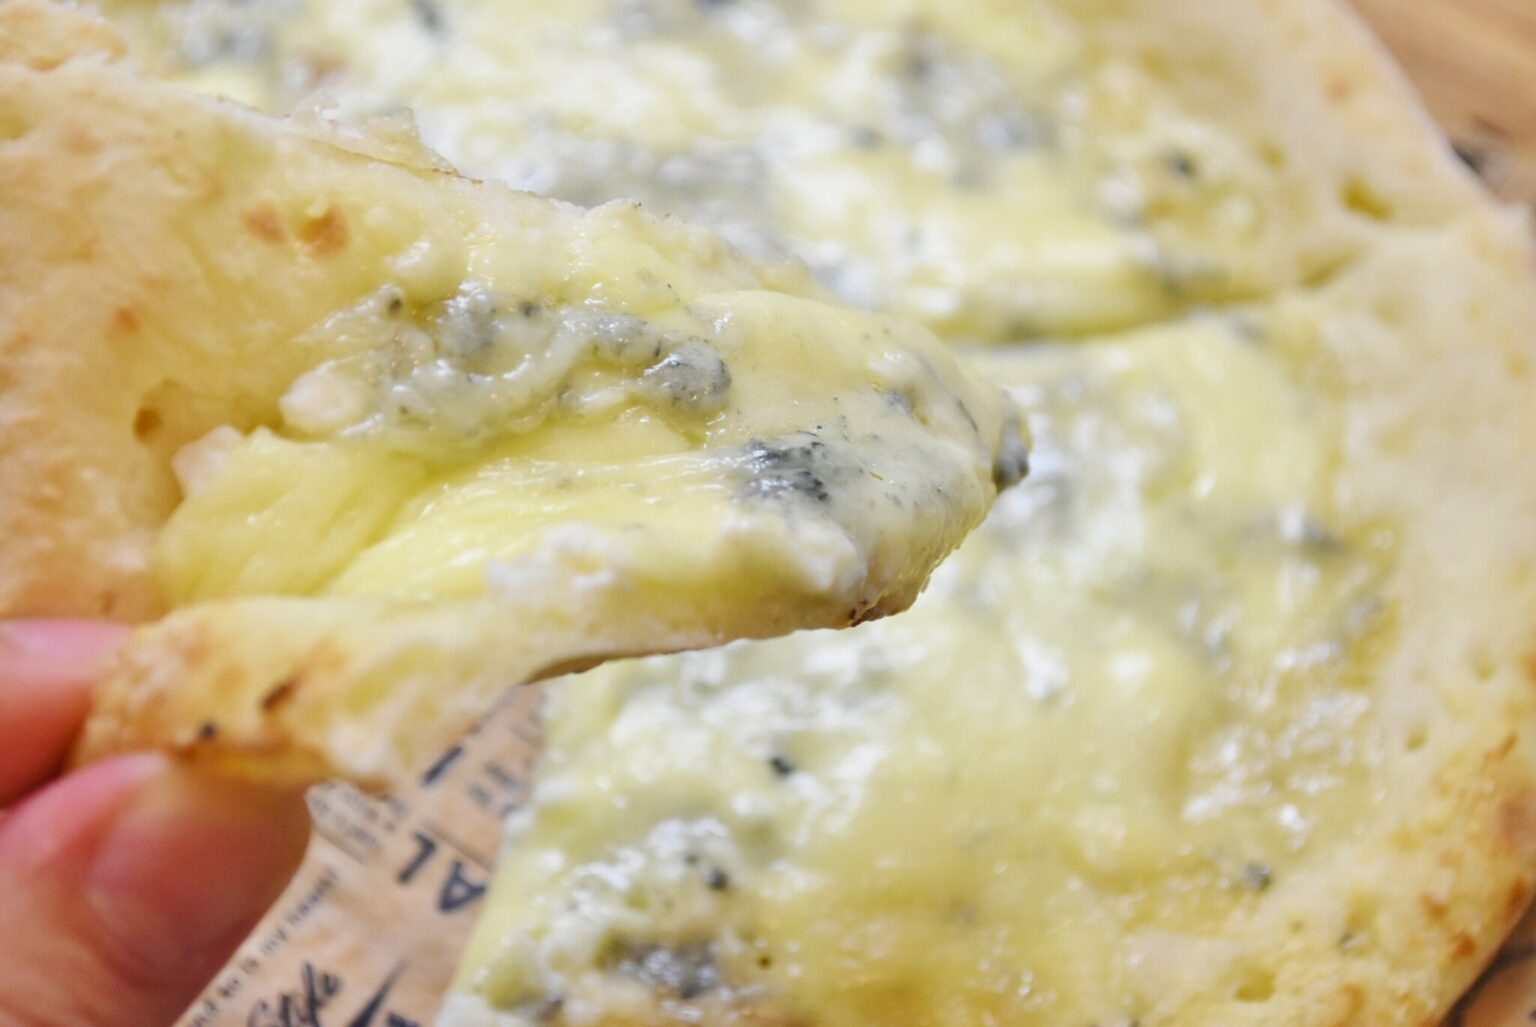 濃厚なチーズとモチモチの生地がよく合う。